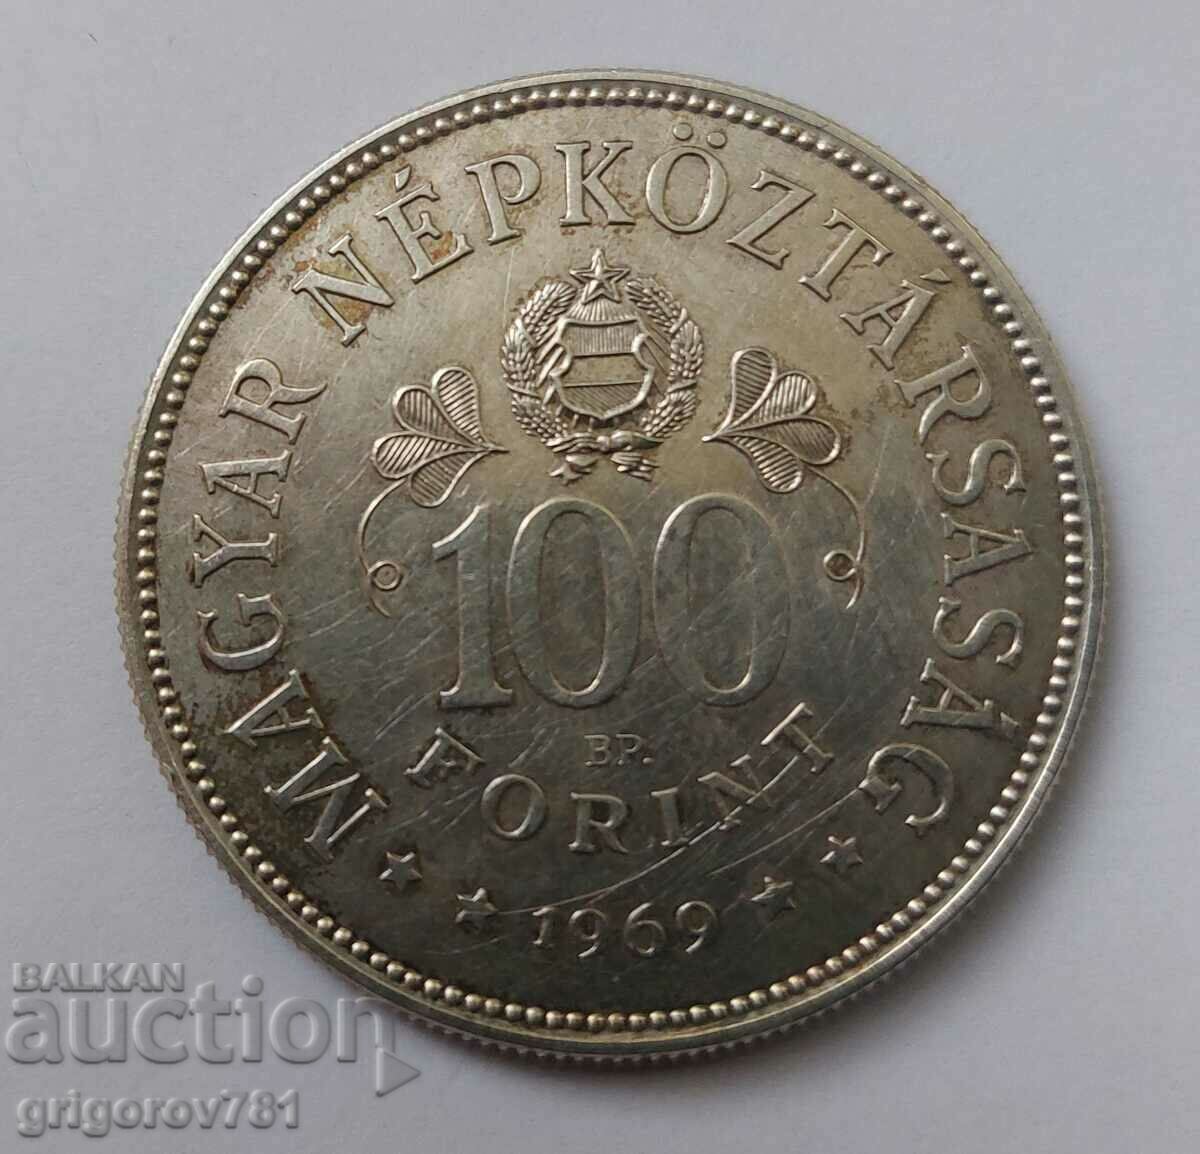 Ασήμι 100 φιορίνια Ουγγαρία 1969 - ασημένιο νόμισμα